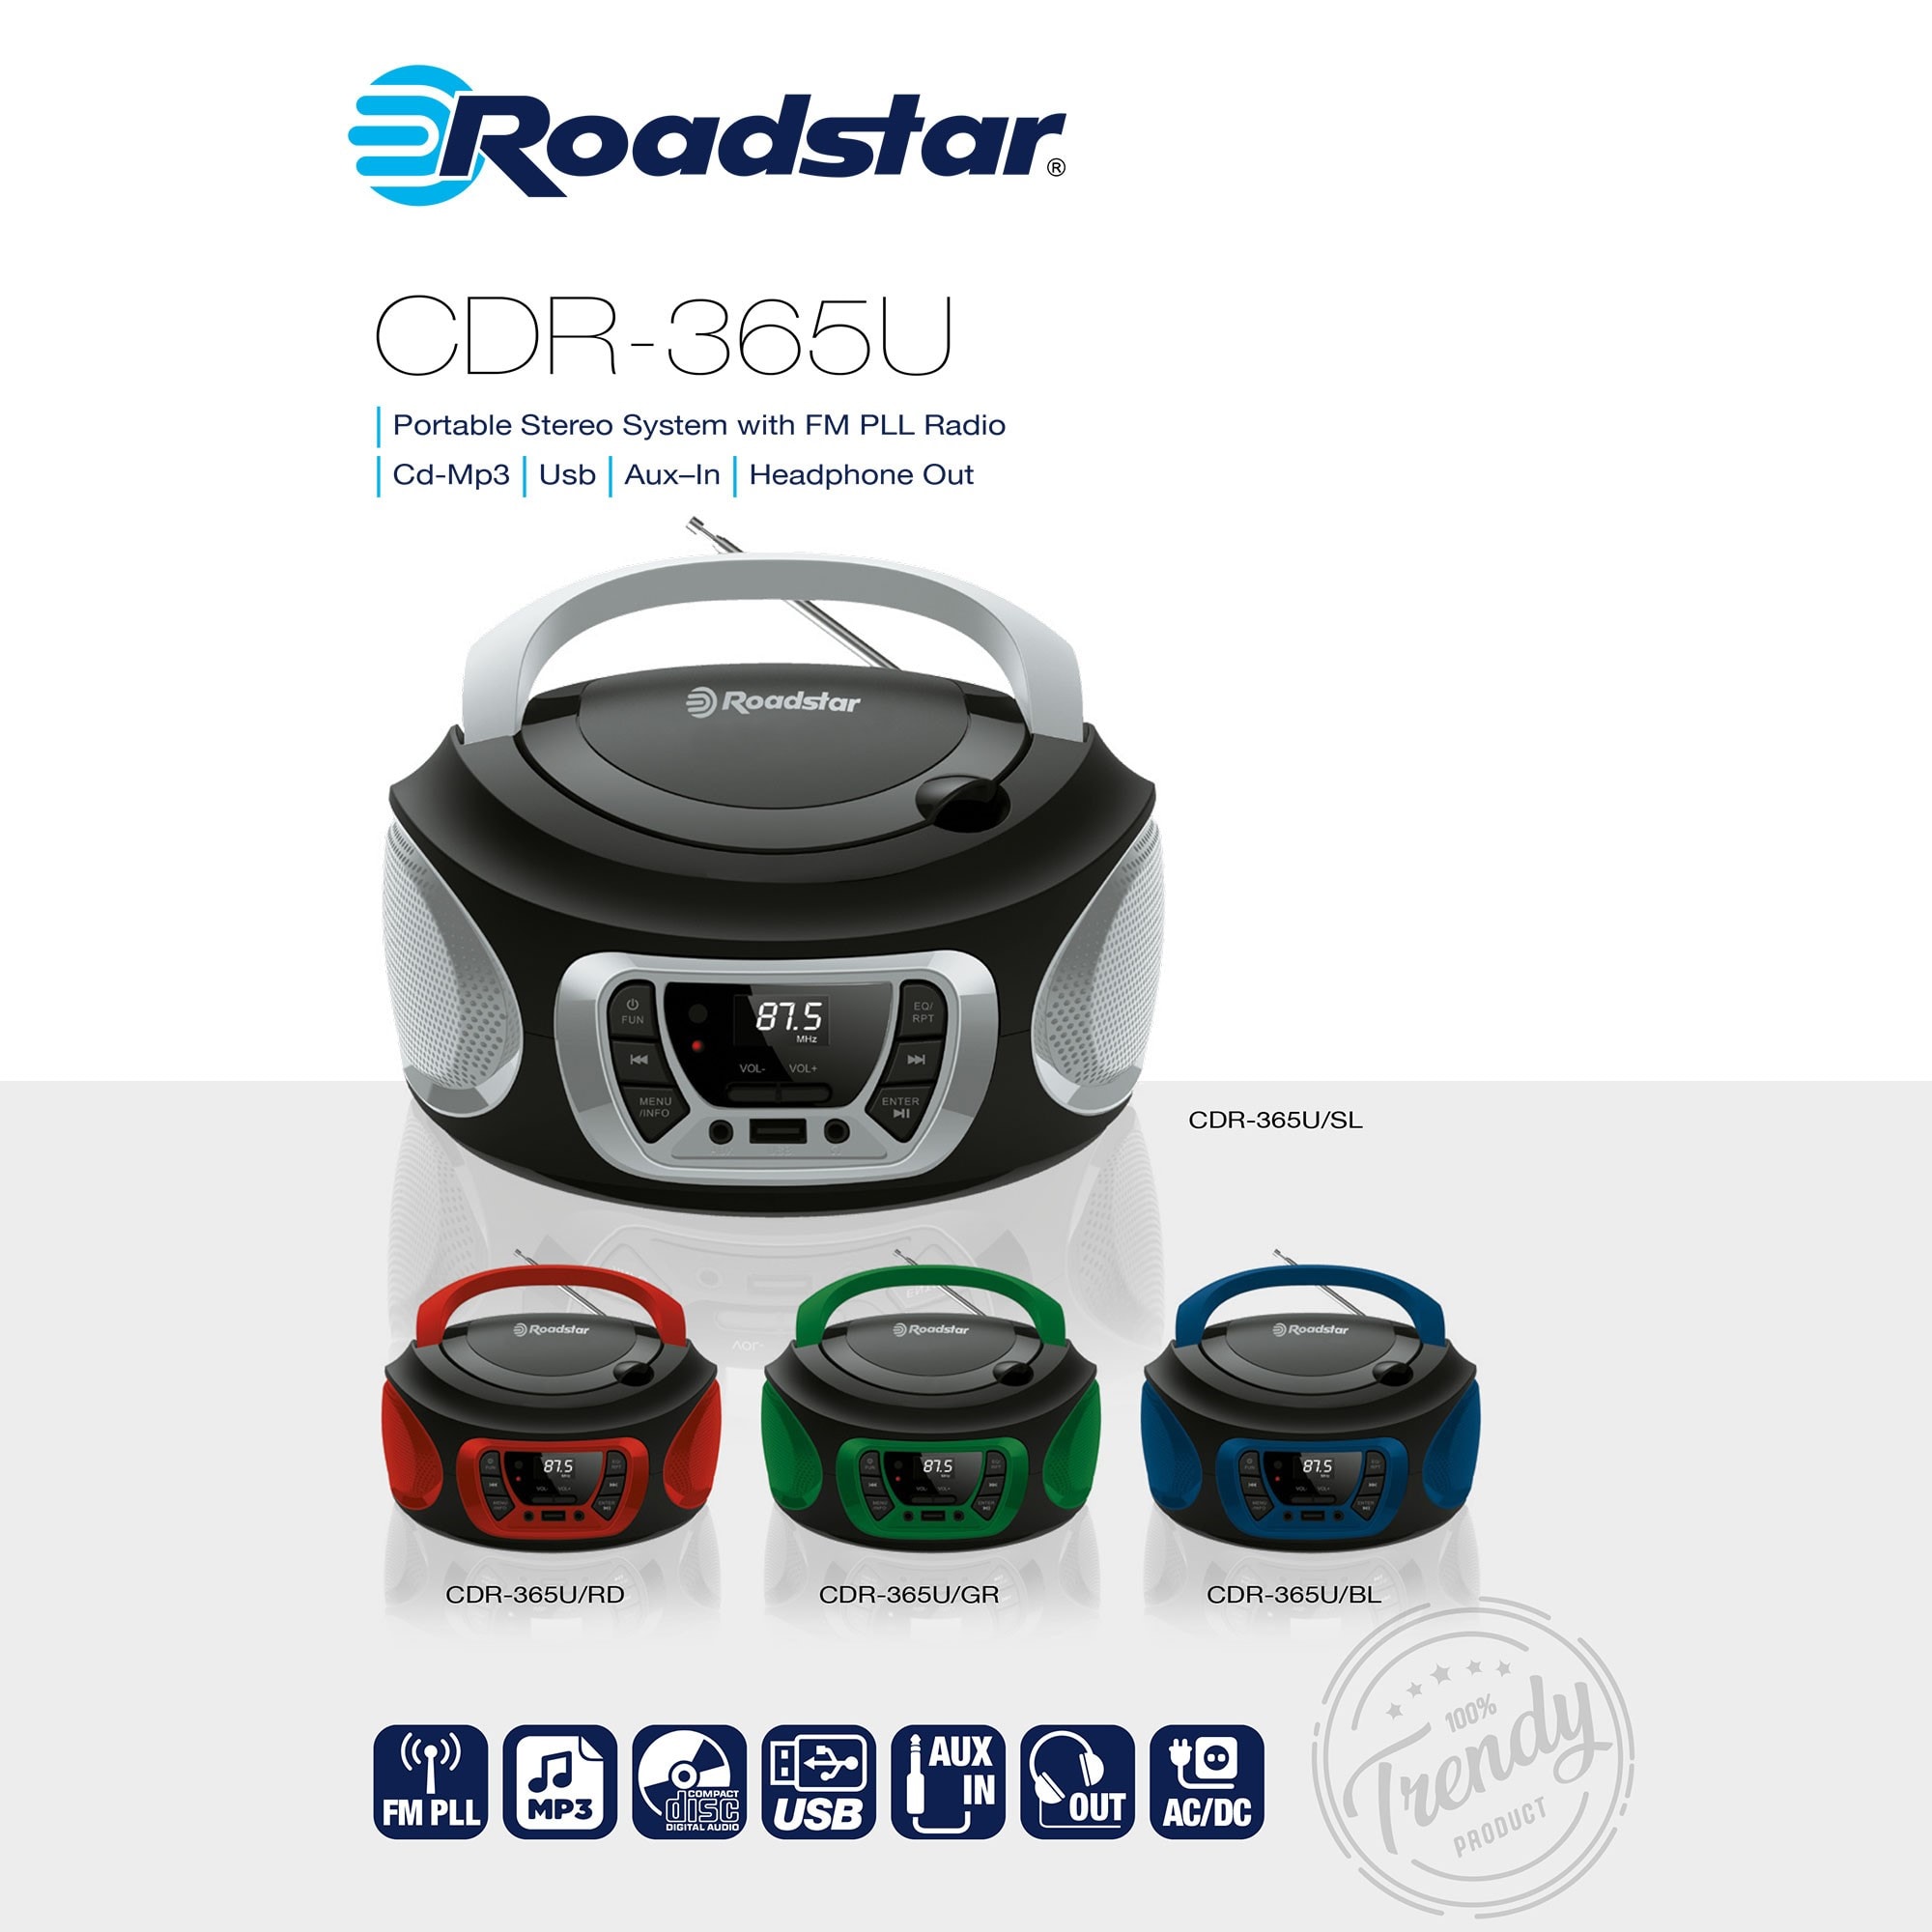 Lecteur CD portable avec bluetooth / DAB+ / FM / USB / AUX, Radios FM /  Numériques